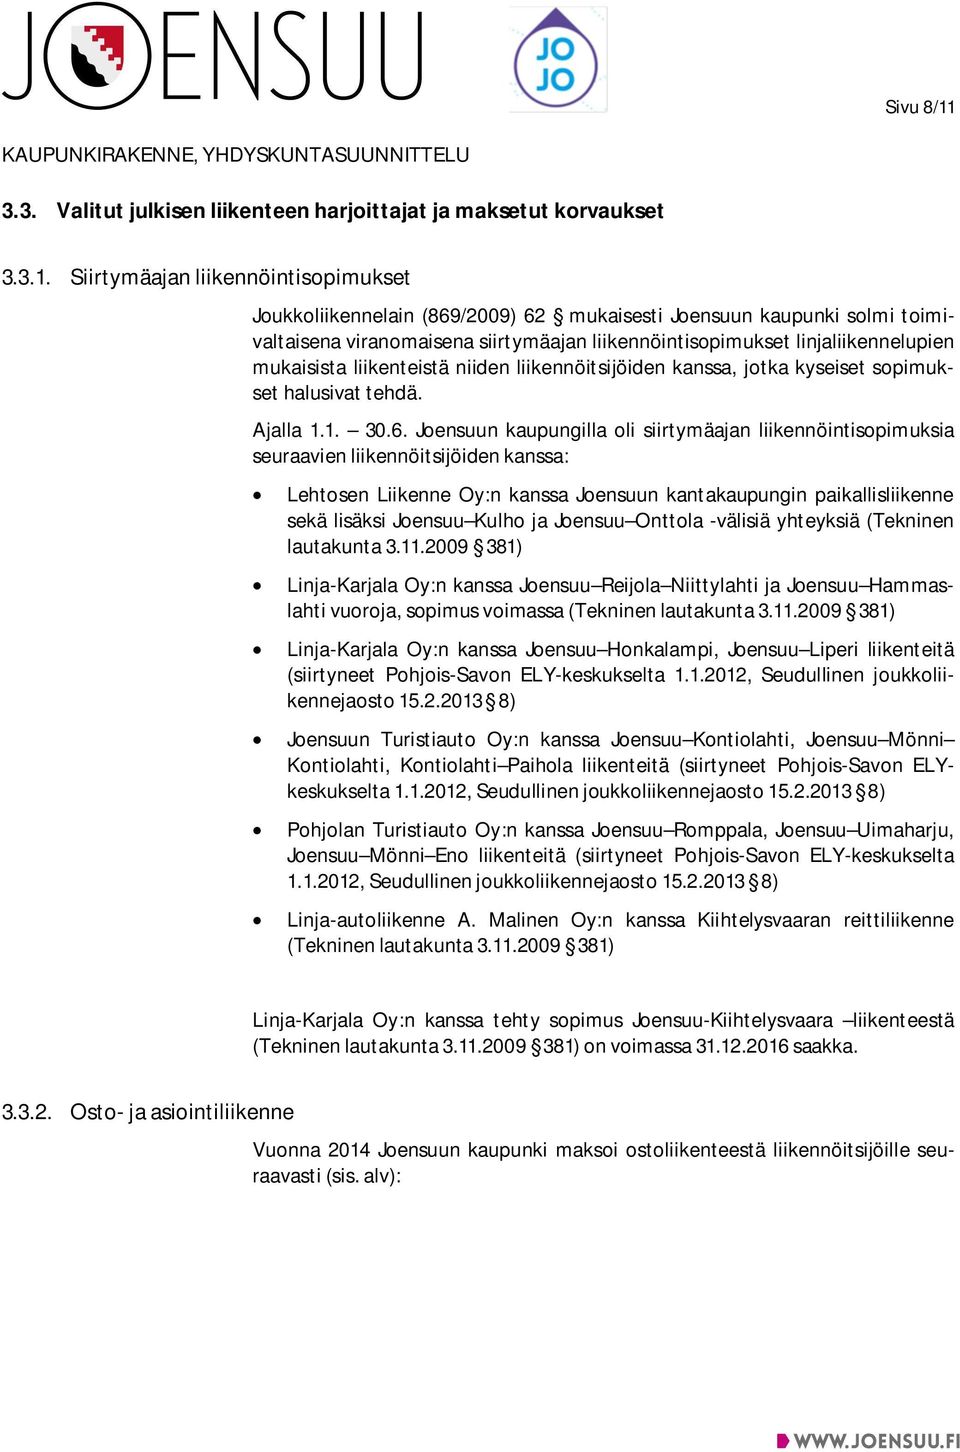 Siirtymäajan liikennöintisopimukset Joukkoliikennelain (869/2009) 62 mukaisesti Joensuun kaupunki solmi toimivaltaisena viranomaisena siirtymäajan liikennöintisopimukset linjaliikennelupien